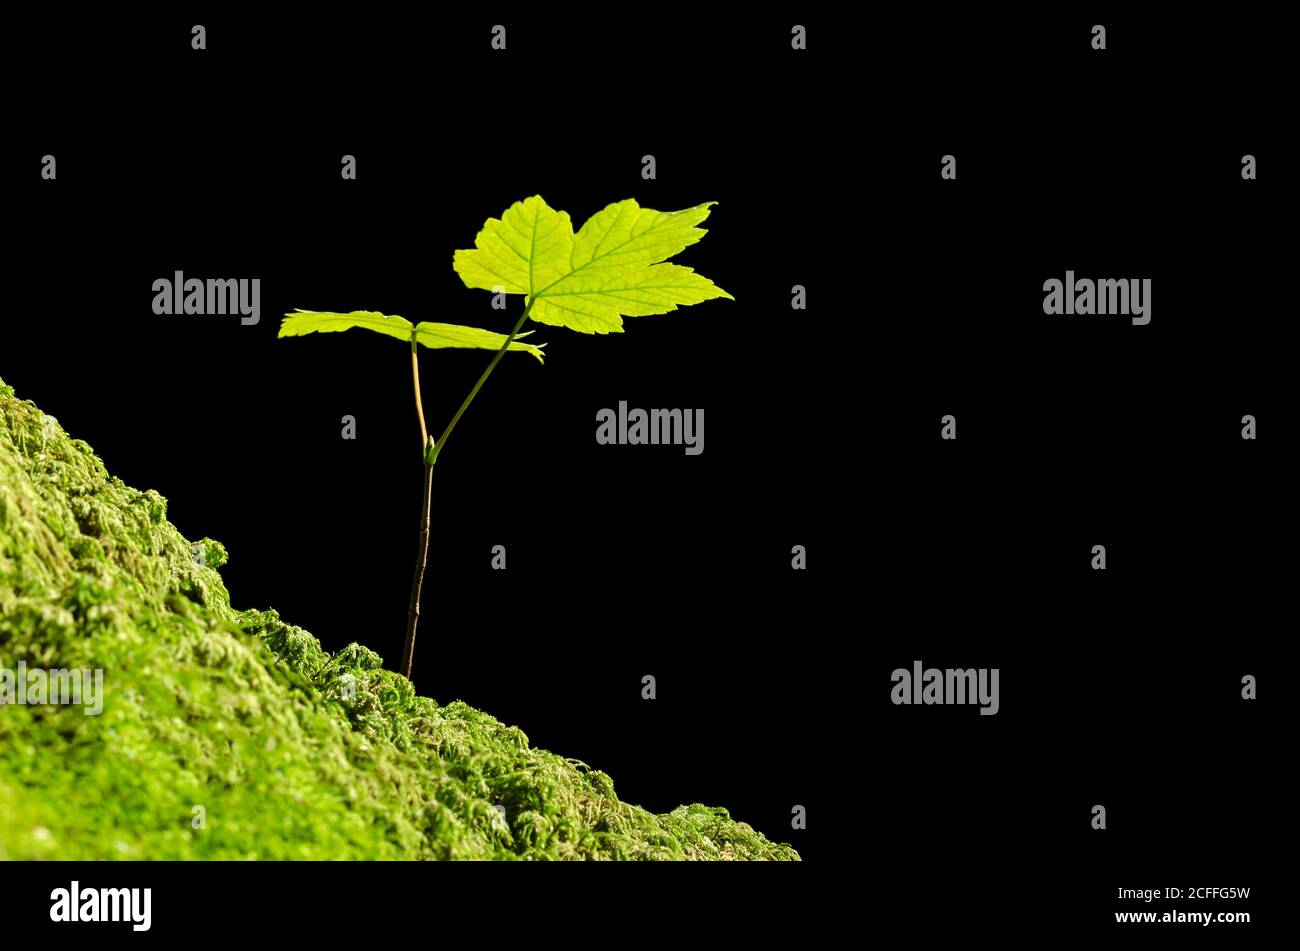 Sycamore se balade au soleil sur un sol de forêt de mousse. Acer pseudoplatanus, un jeune érable originaire d'Europe centrale, pousse sur terre. Banque D'Images